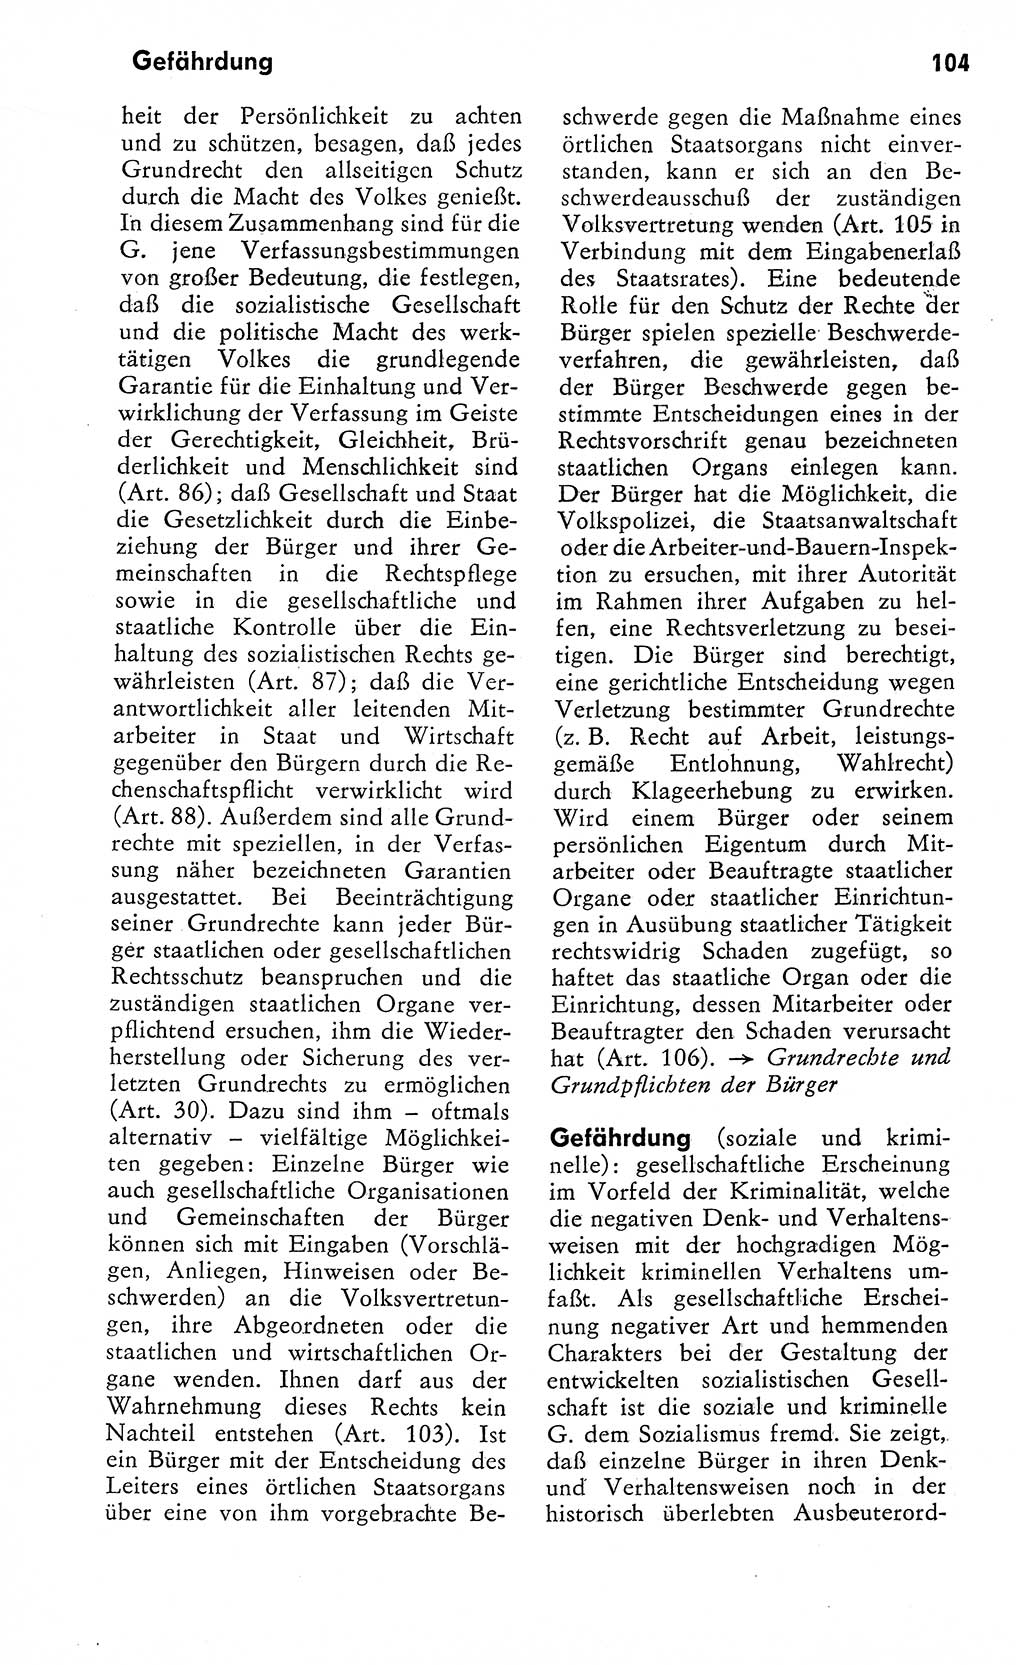 Wörterbuch zum sozialistischen Staat [Deutsche Demokratische Republik (DDR)] 1974, Seite 104 (Wb. soz. St. DDR 1974, S. 104)